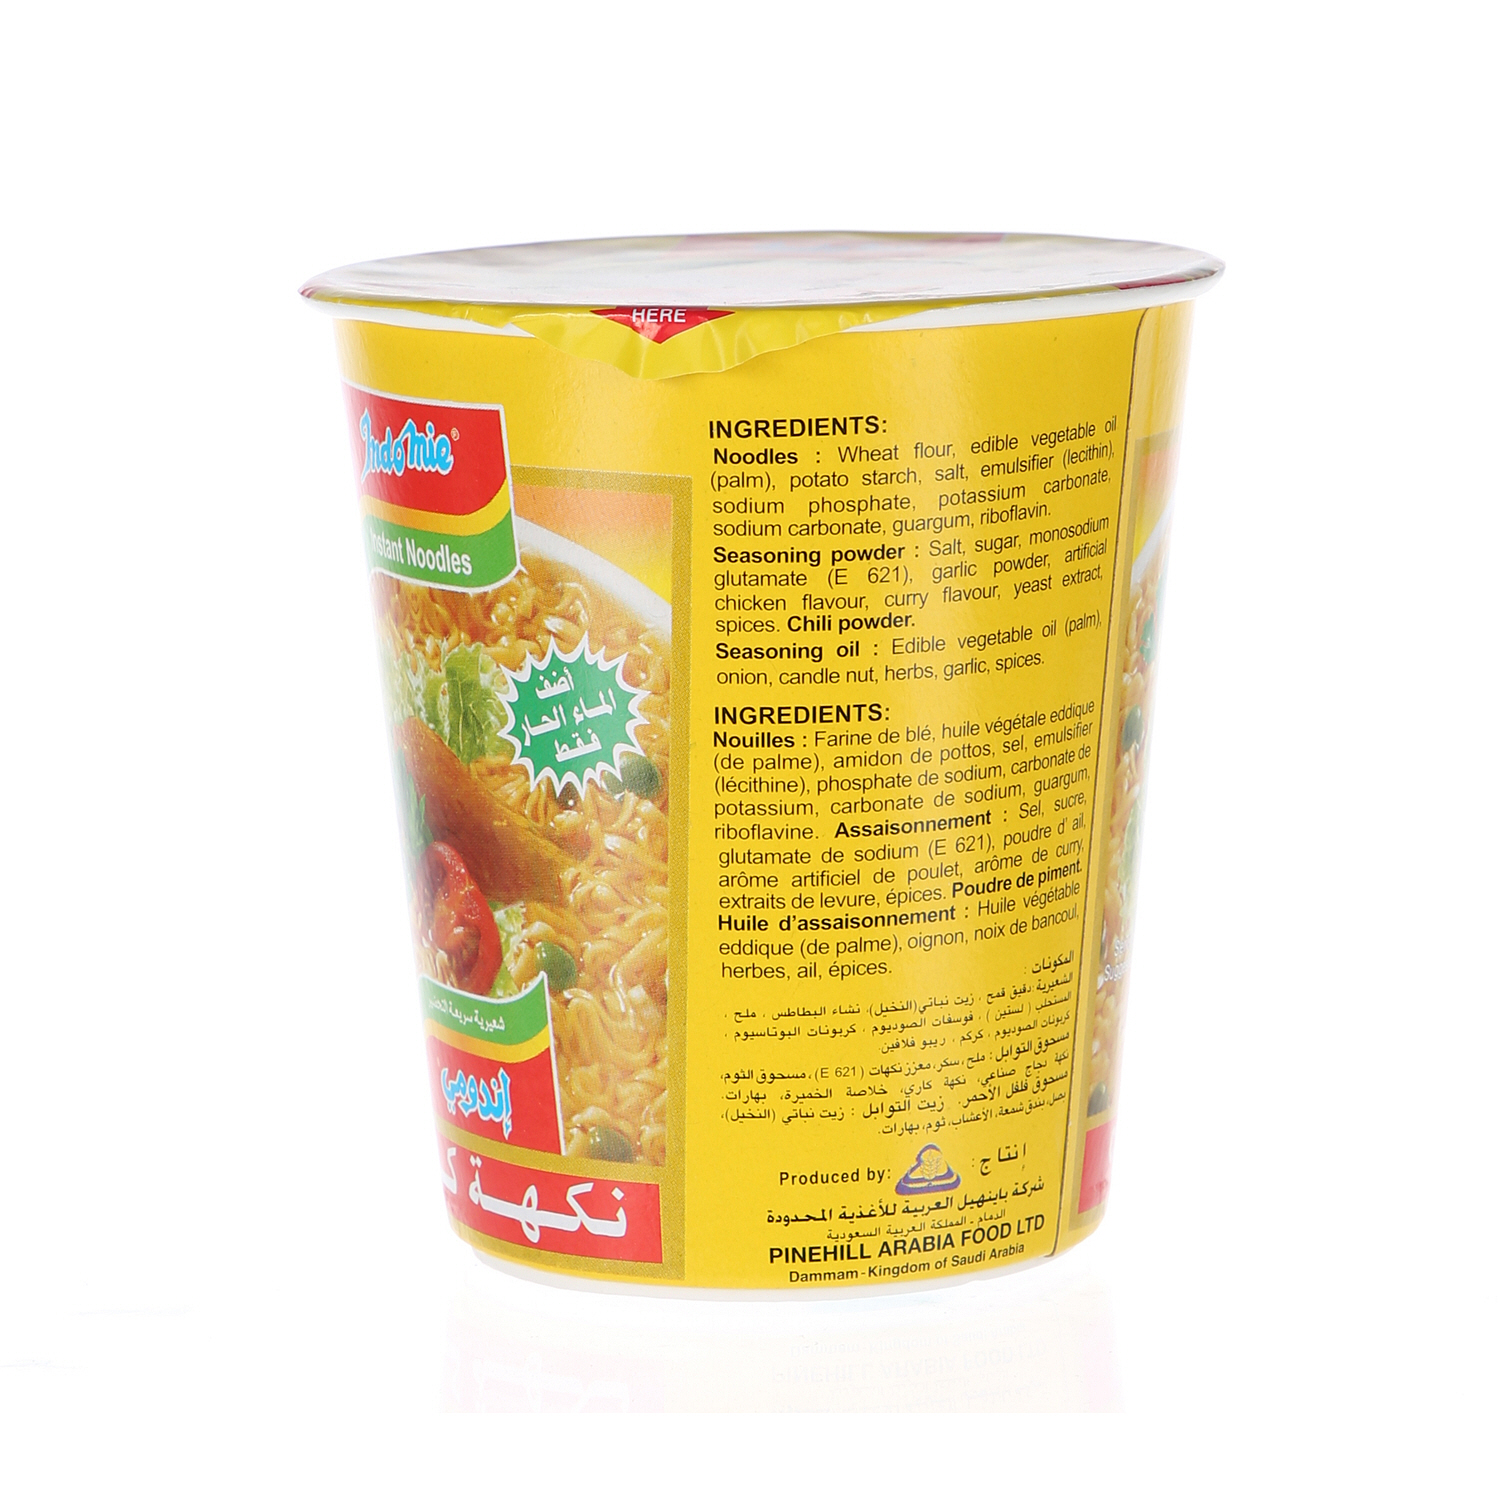 Indomie Noodles Cup Curry Flavor 60 g